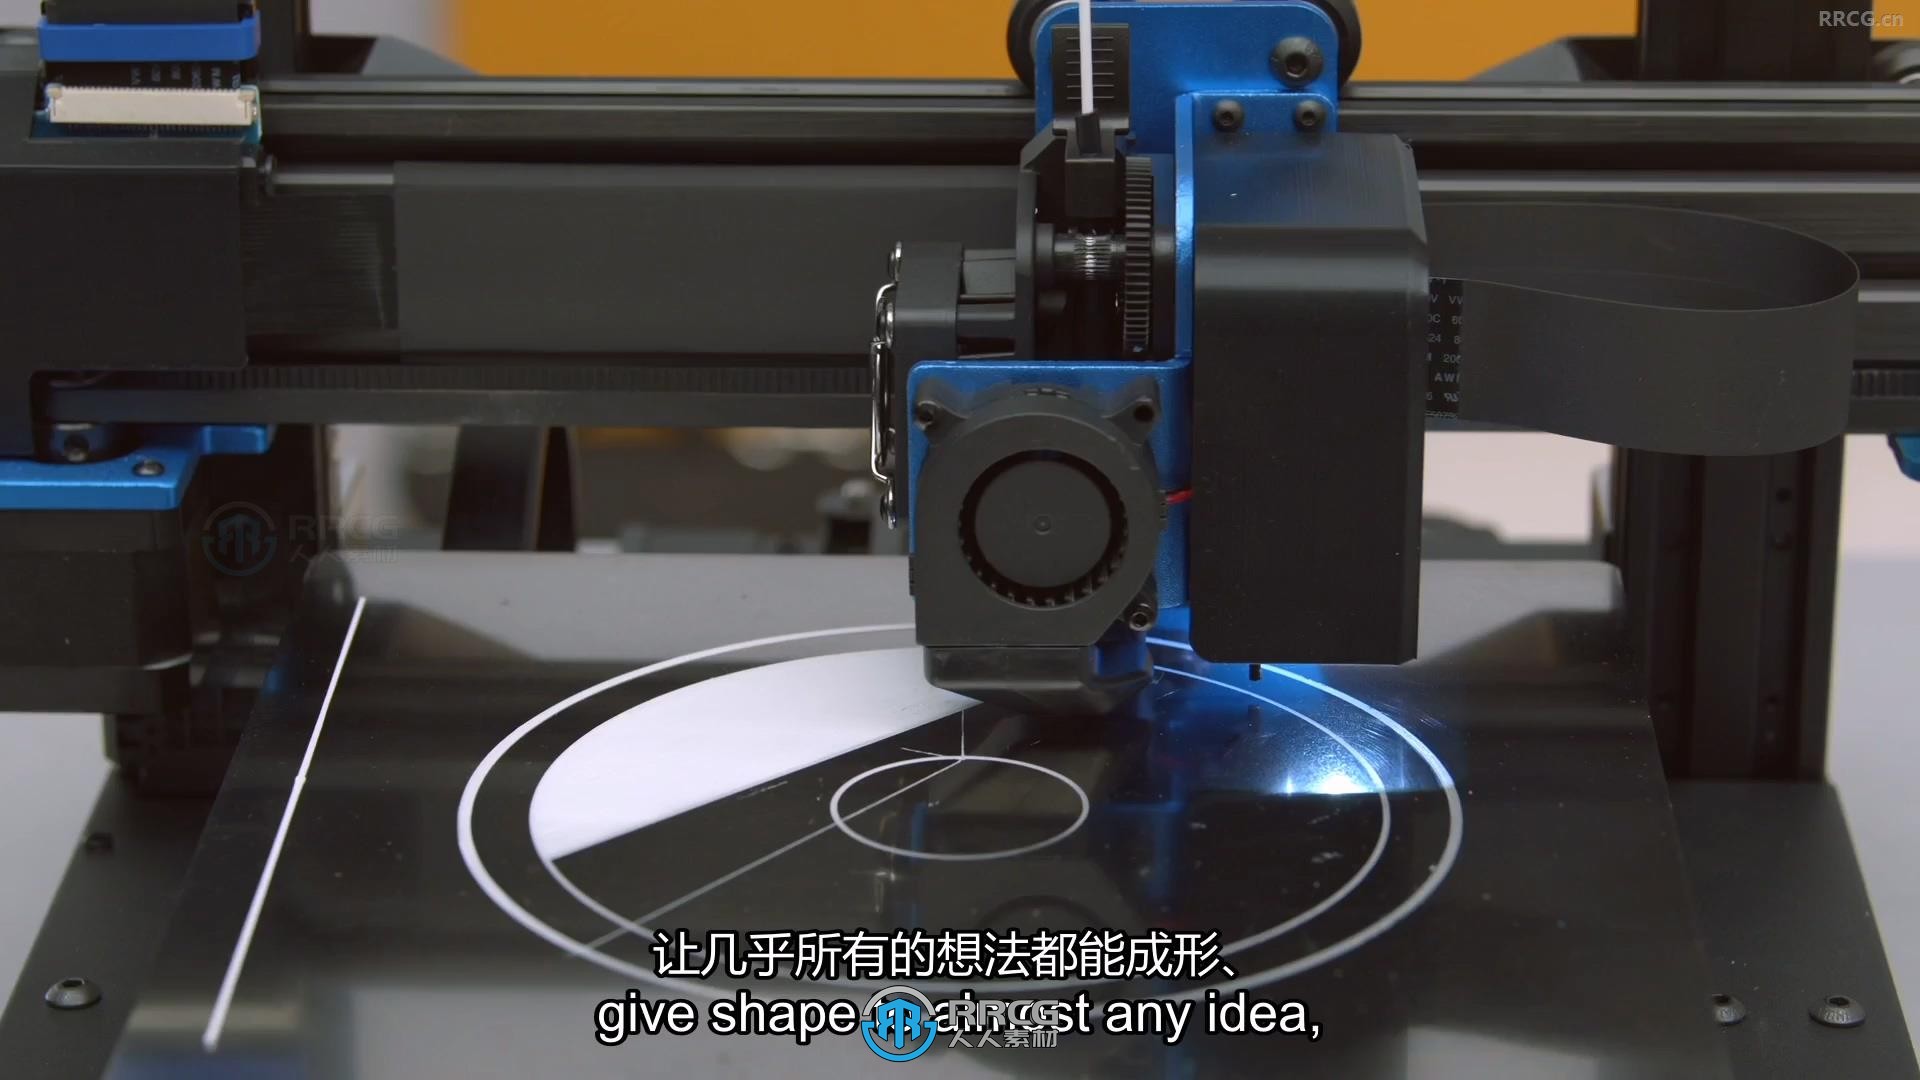 【中文字幕】Fusion 360产品设计从建模到3D打印全流程视频教程